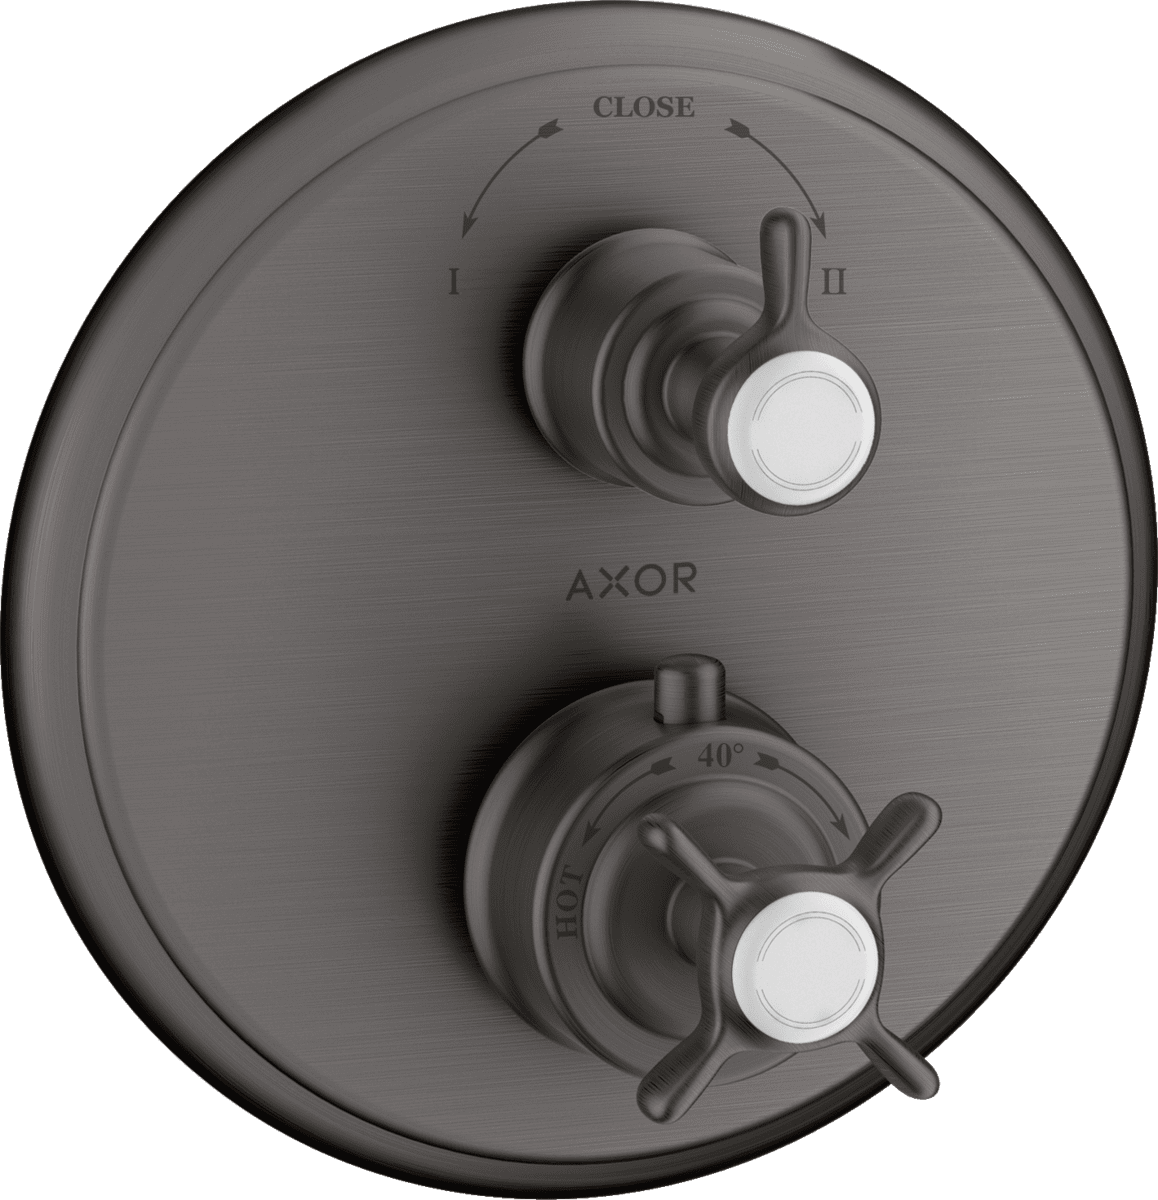 εικόνα του HANSGROHE AXOR Montreux Thermostat for concealed installation with cross handle and shut-off/ diverter valve #16820340 - Brushed Black Chrome